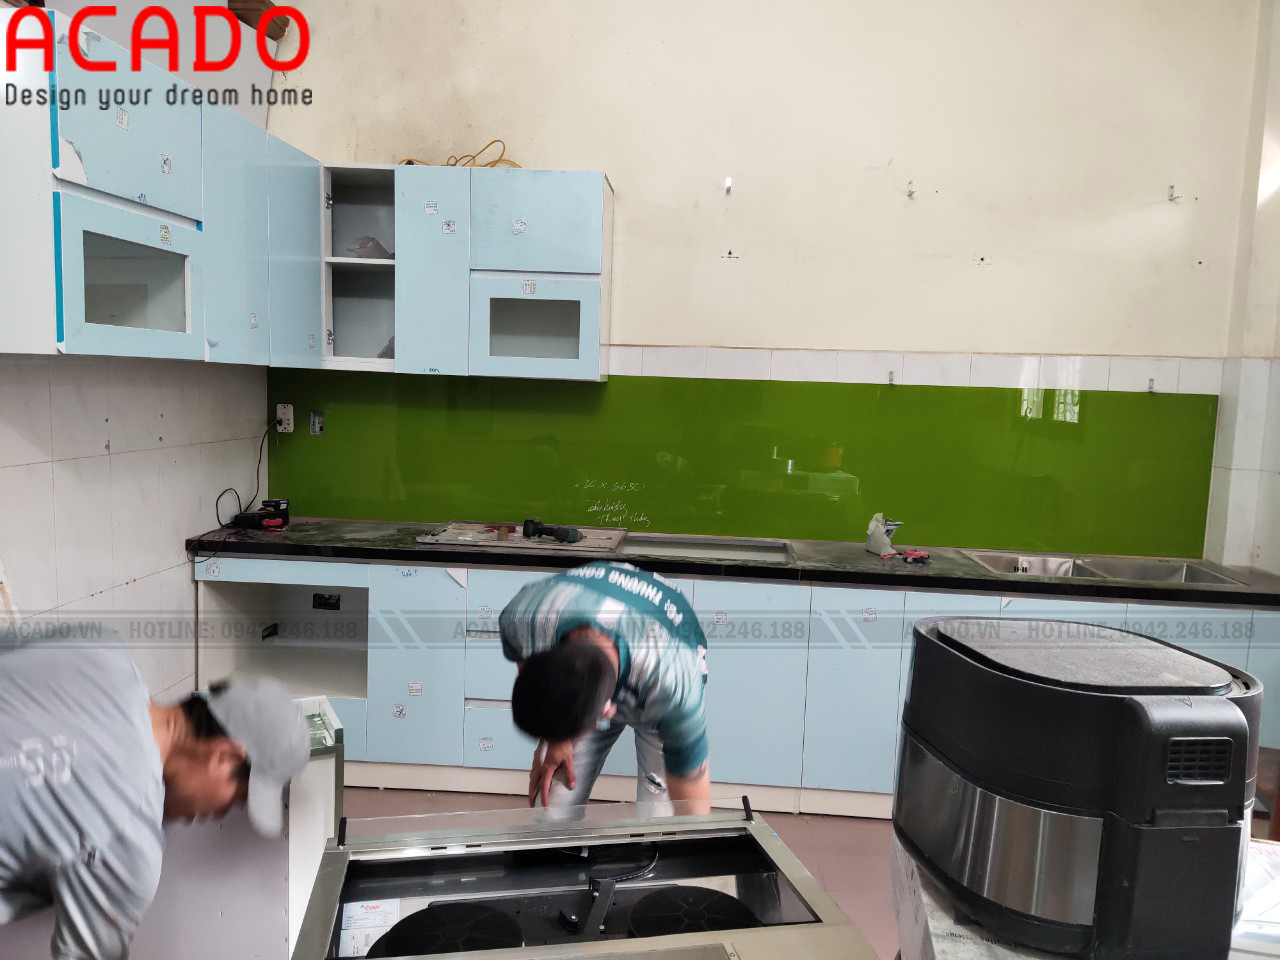 Thợ thi công nhanh chóng hoàn thiện quá trình lắp đặt tủ bếp cho gia đình anh Phong